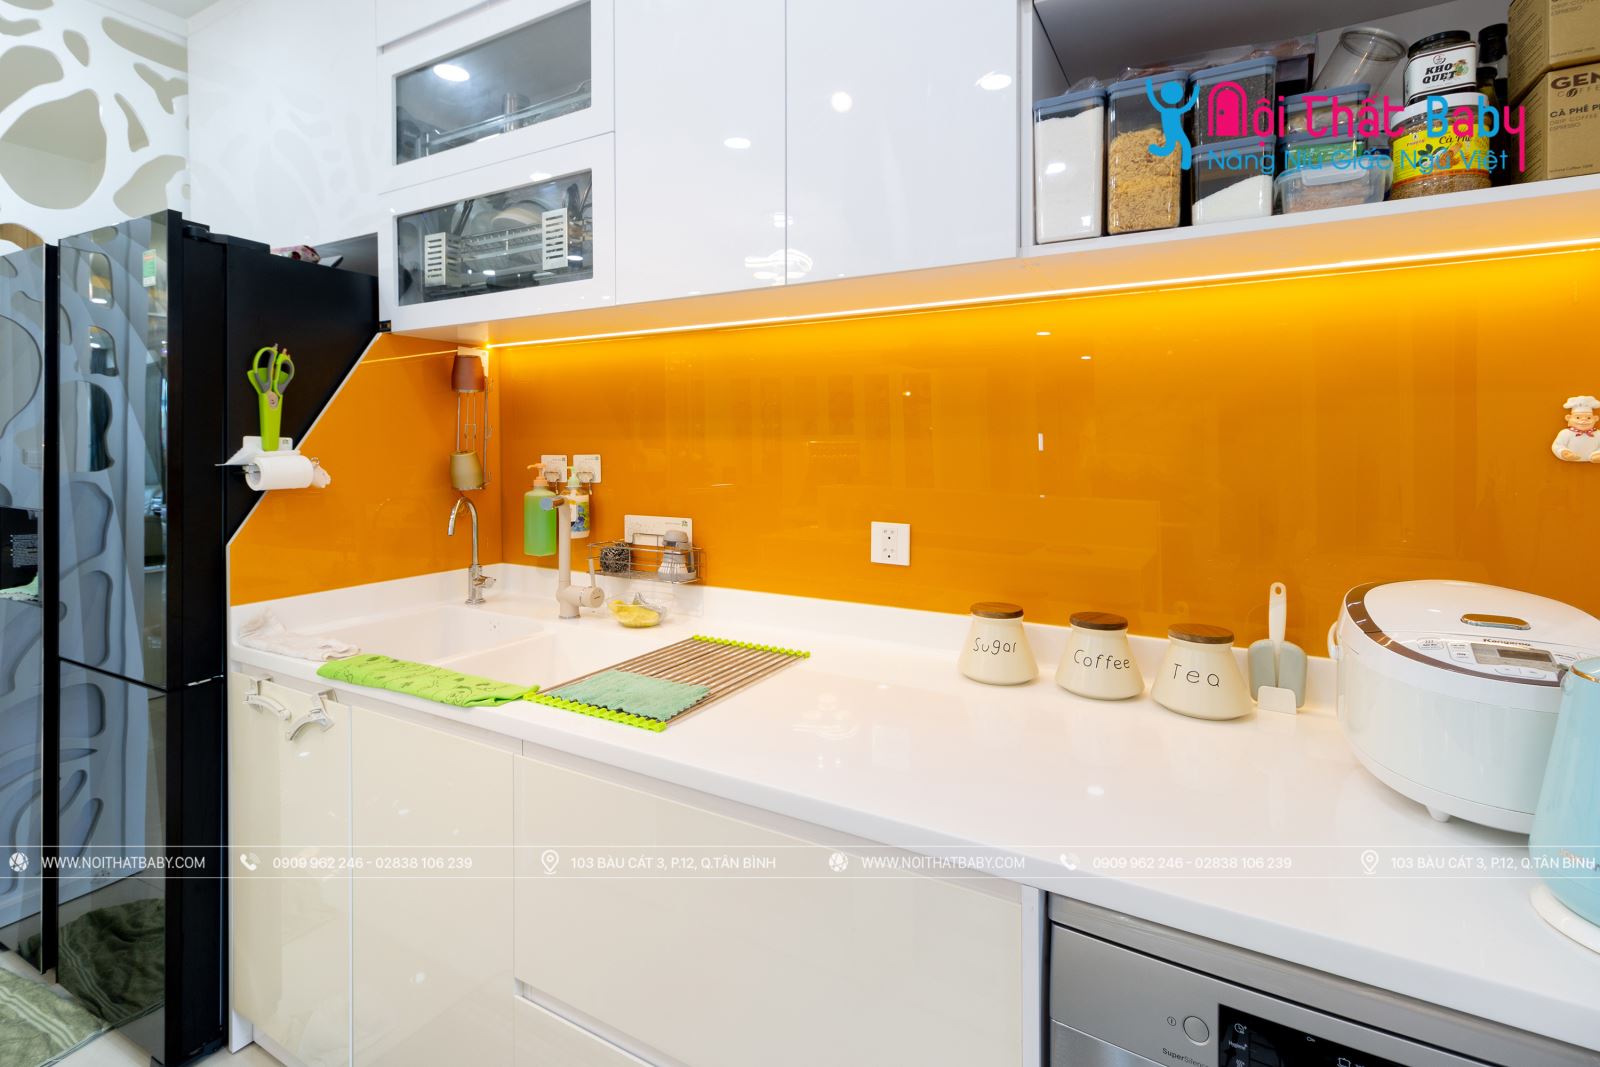 Hình ảnh công trình thực tế nội thất nguyên căn nhà chị Hồng tại Emerald Celadon City 104m2